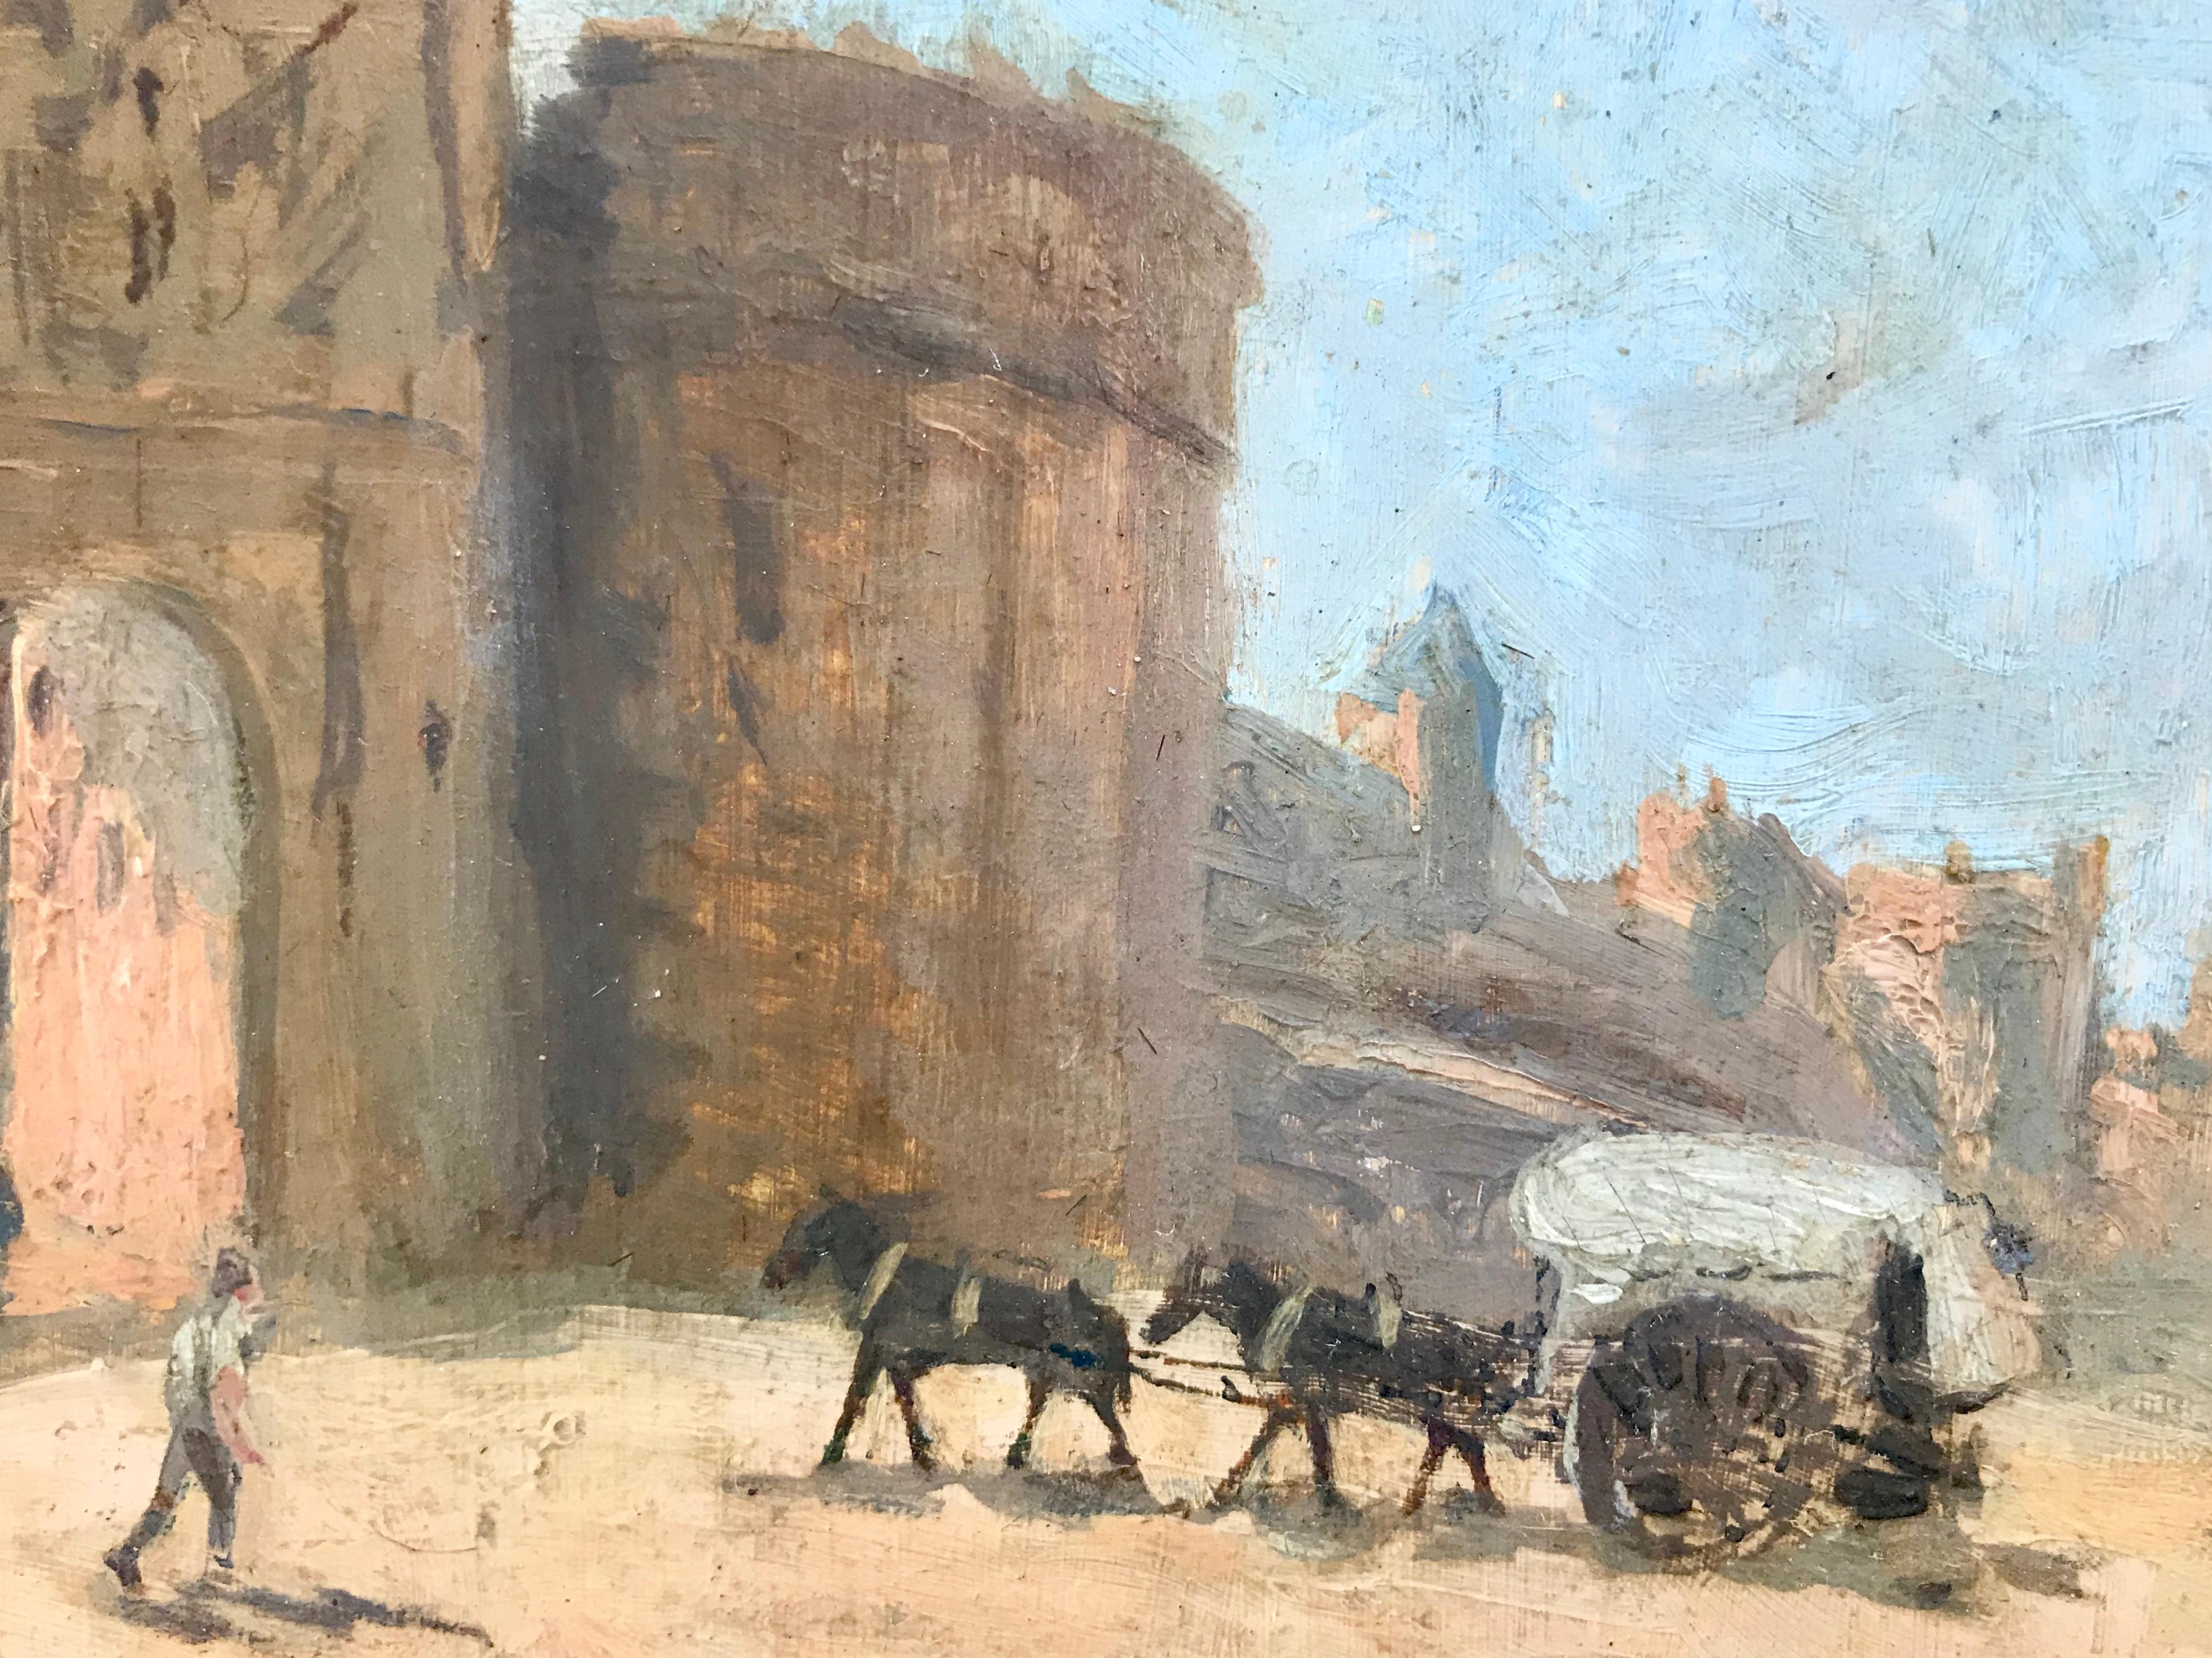 “Puerta Bisagra, Toledo” - Painting by Robert Camm